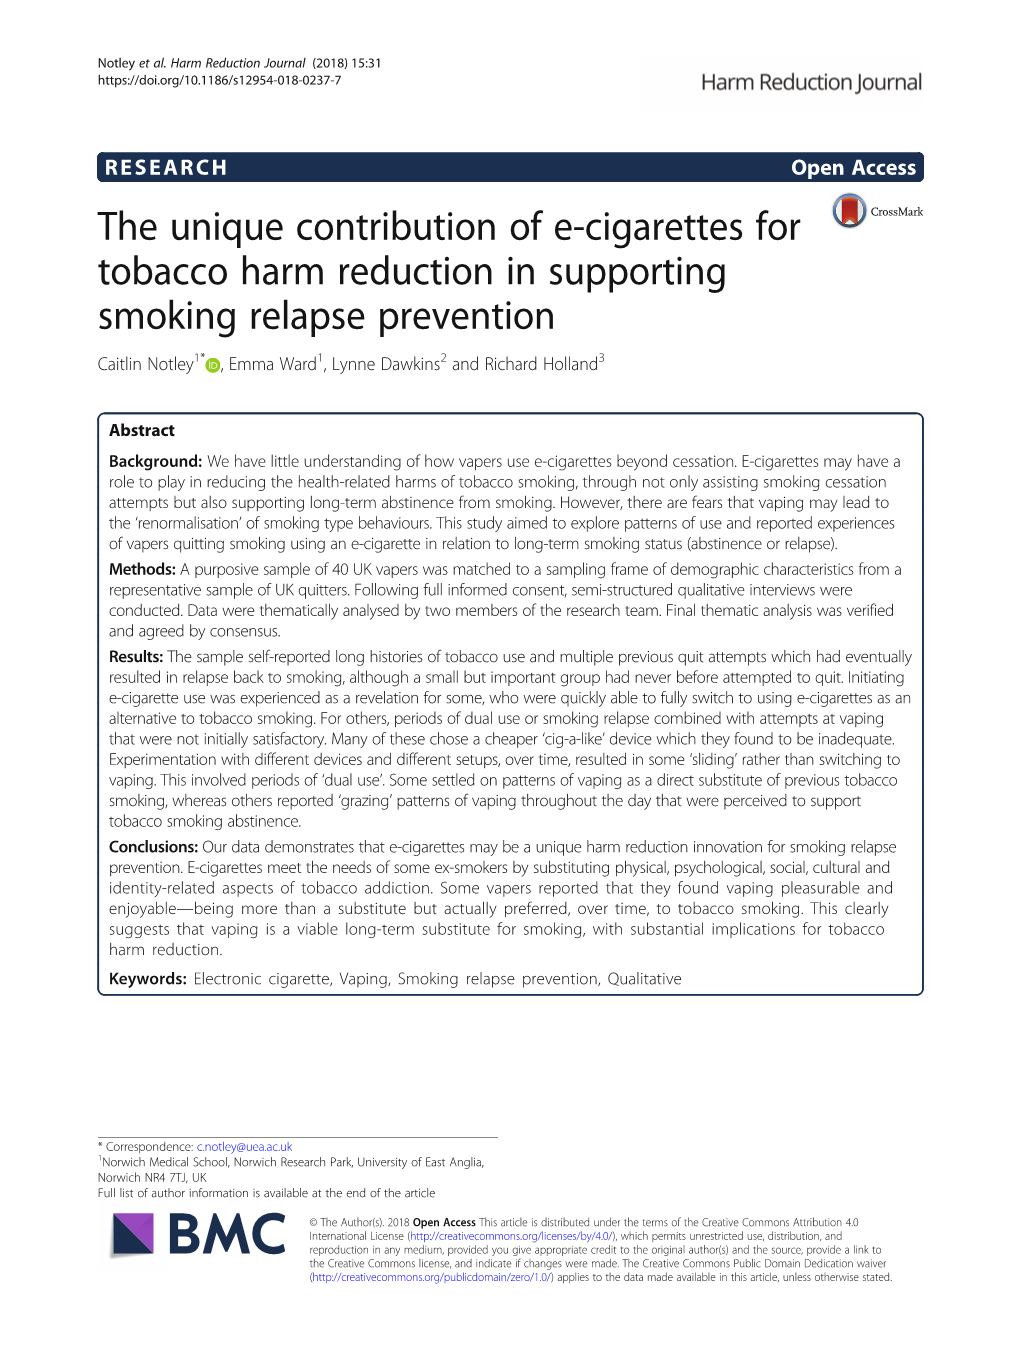 The Unique Contribution of E-Cigarettes for Tobacco Harm